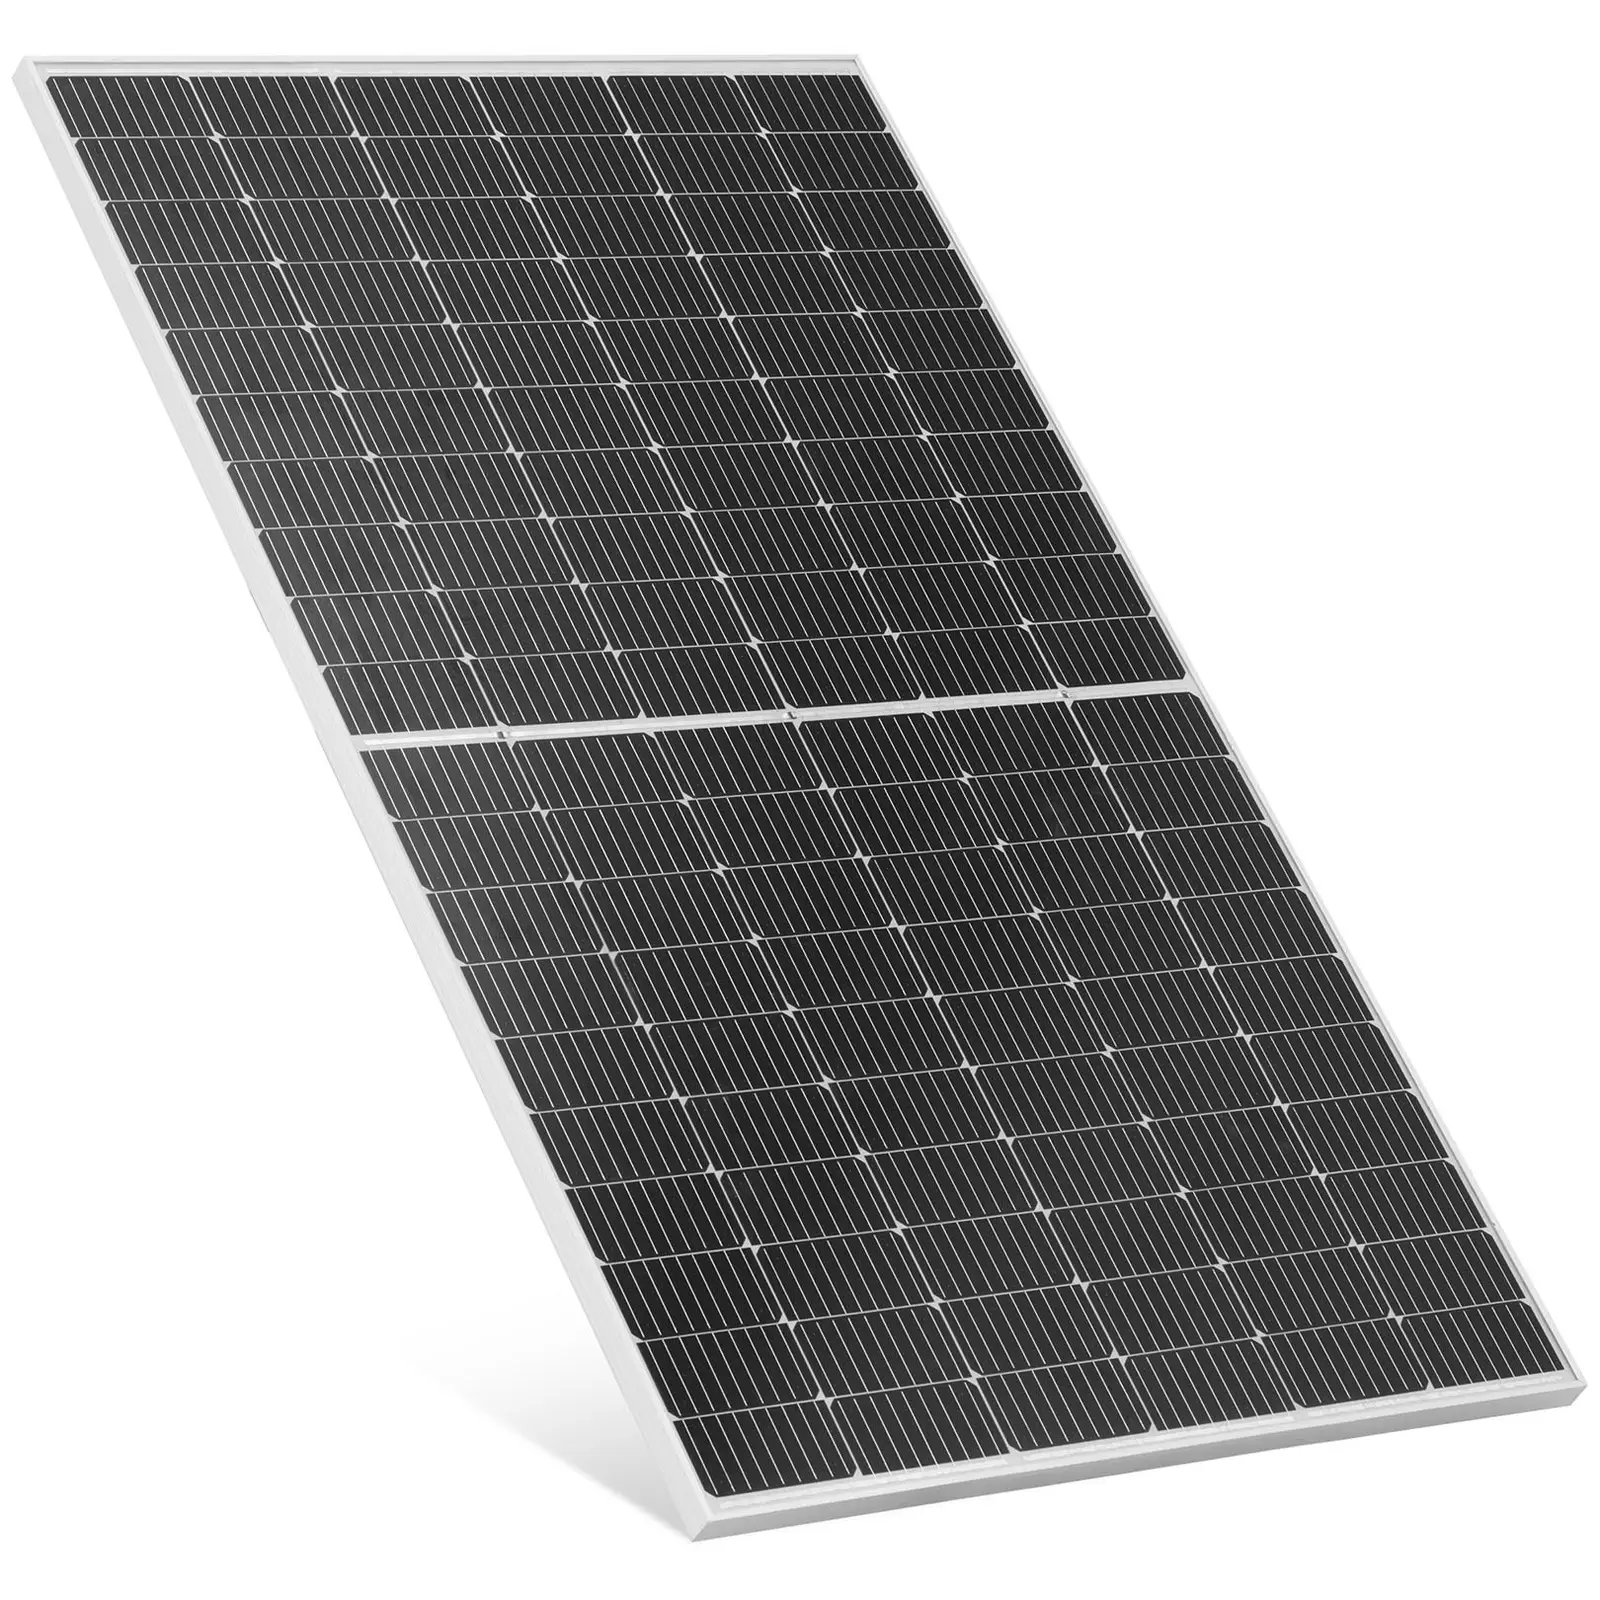 Monokristalni solarni panel - 360 W - 41.36 V - s premosnom diodom